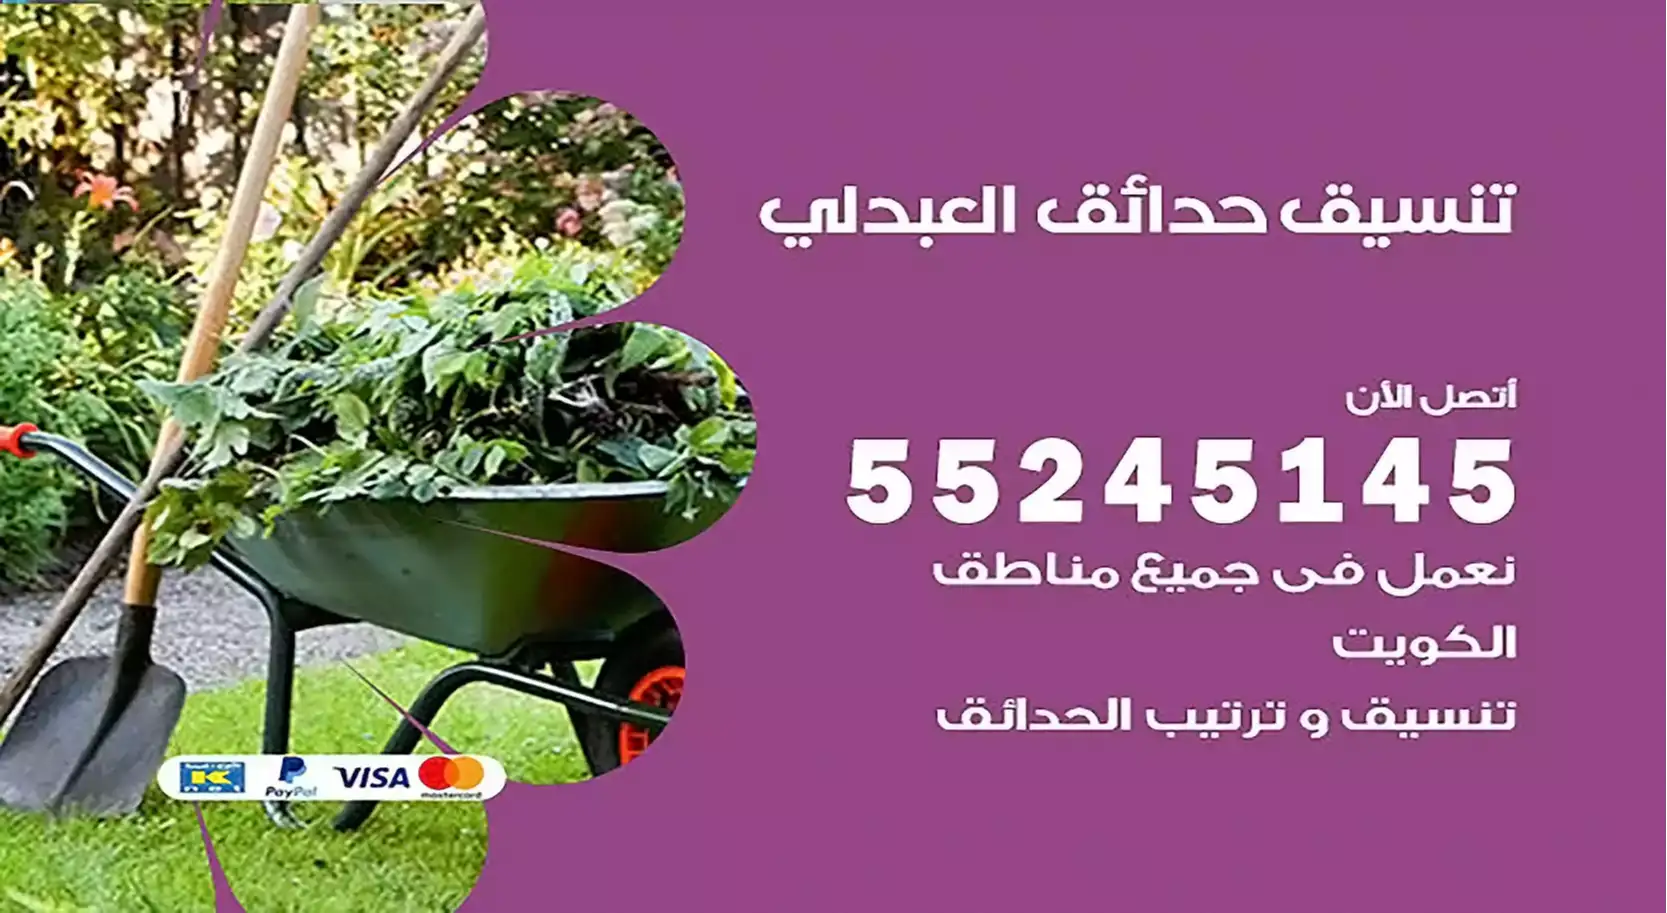 تنسيق حدائق العبدلي 55245145 تصميم و تنسيق حدائق منزلية